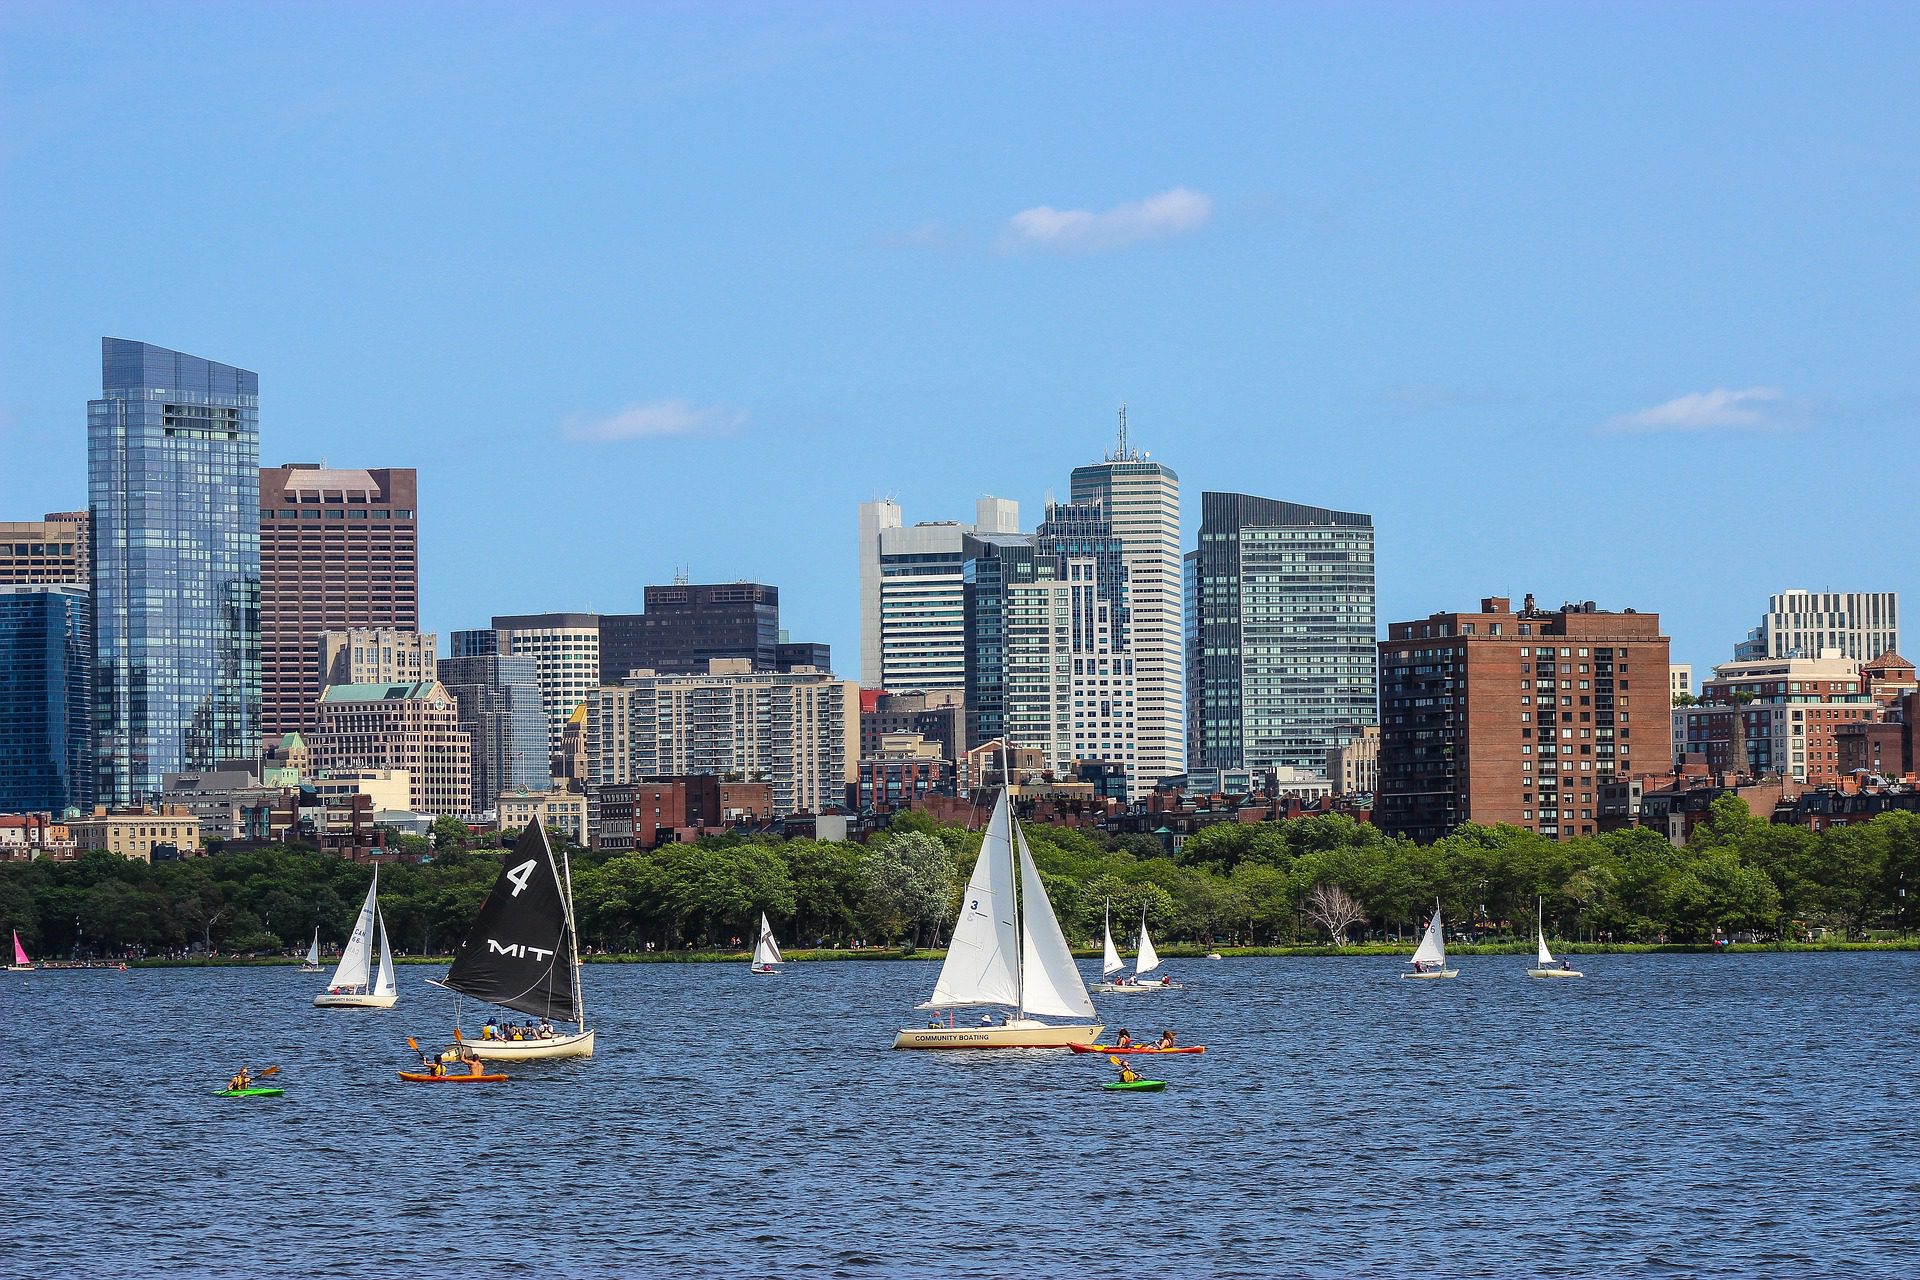 Histoire de la ville de Boston